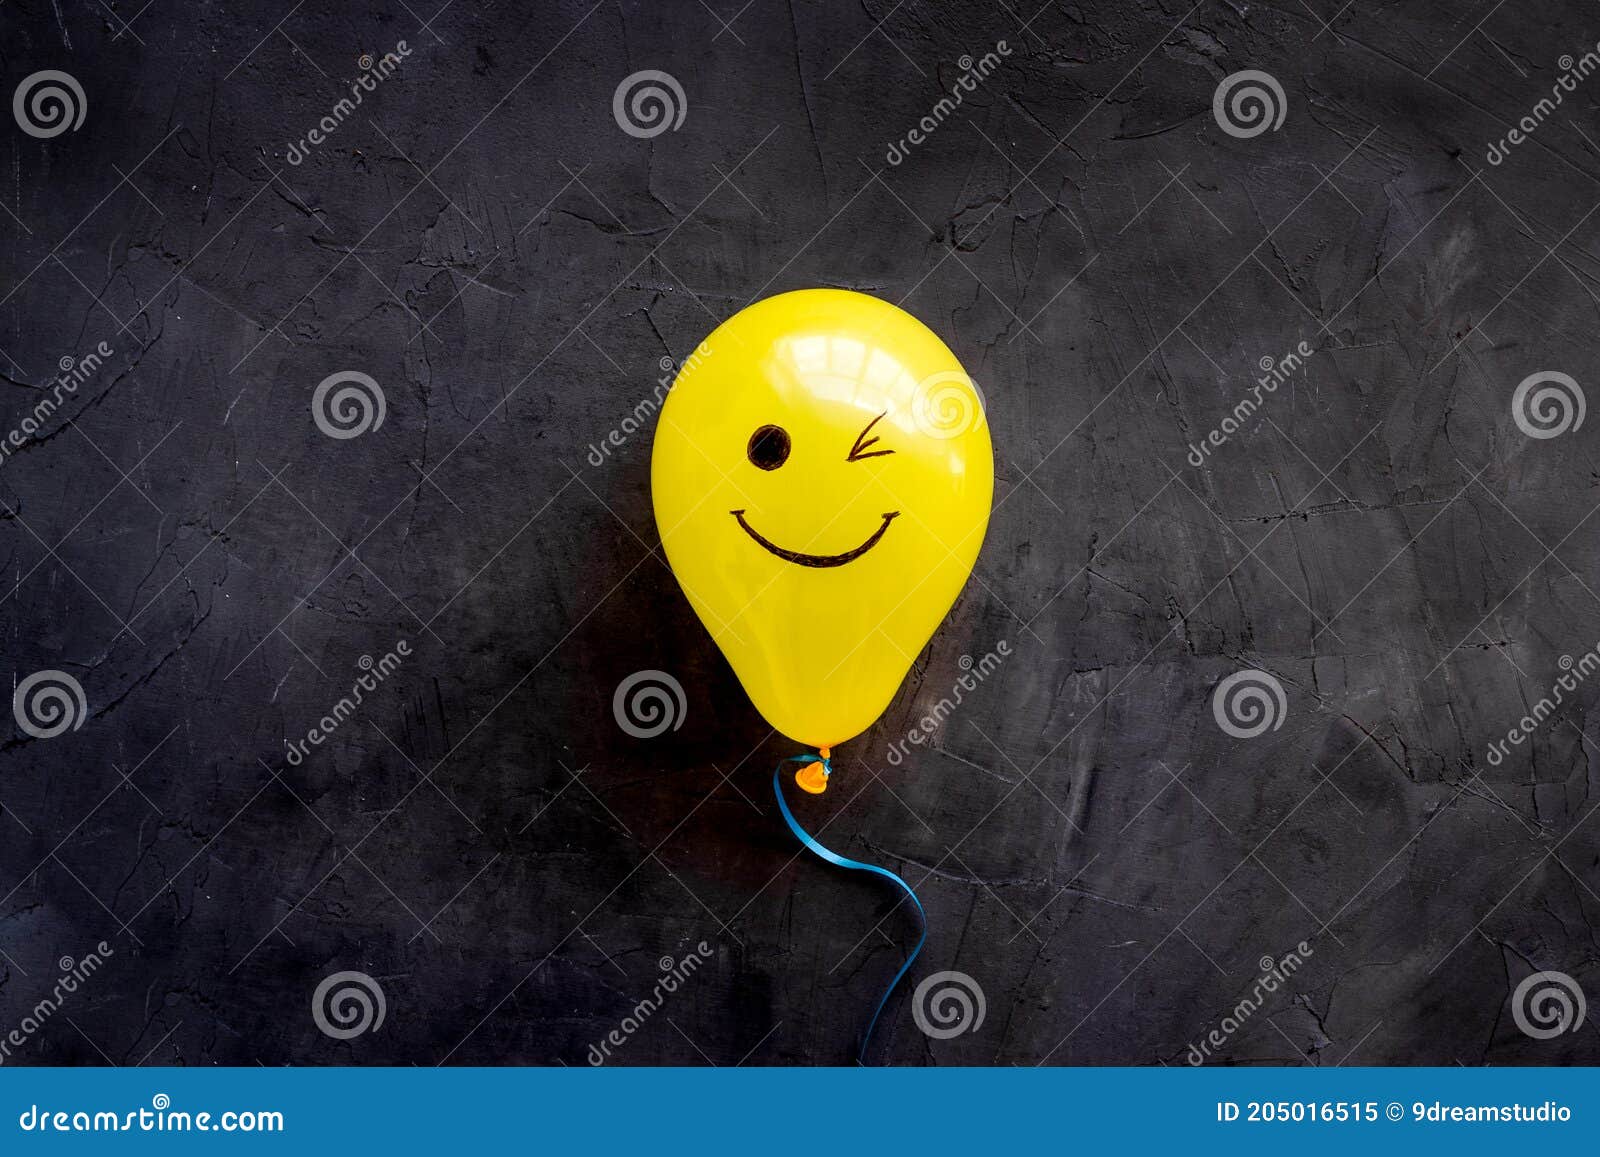 balloon JOI